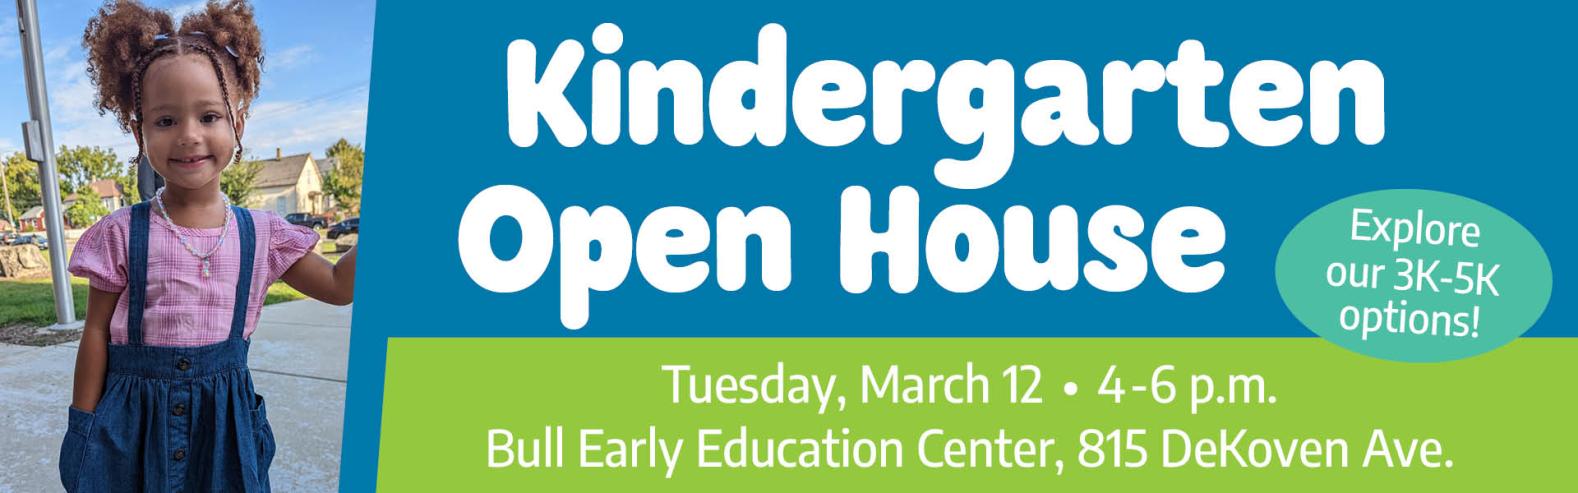 Kindergarten Open House